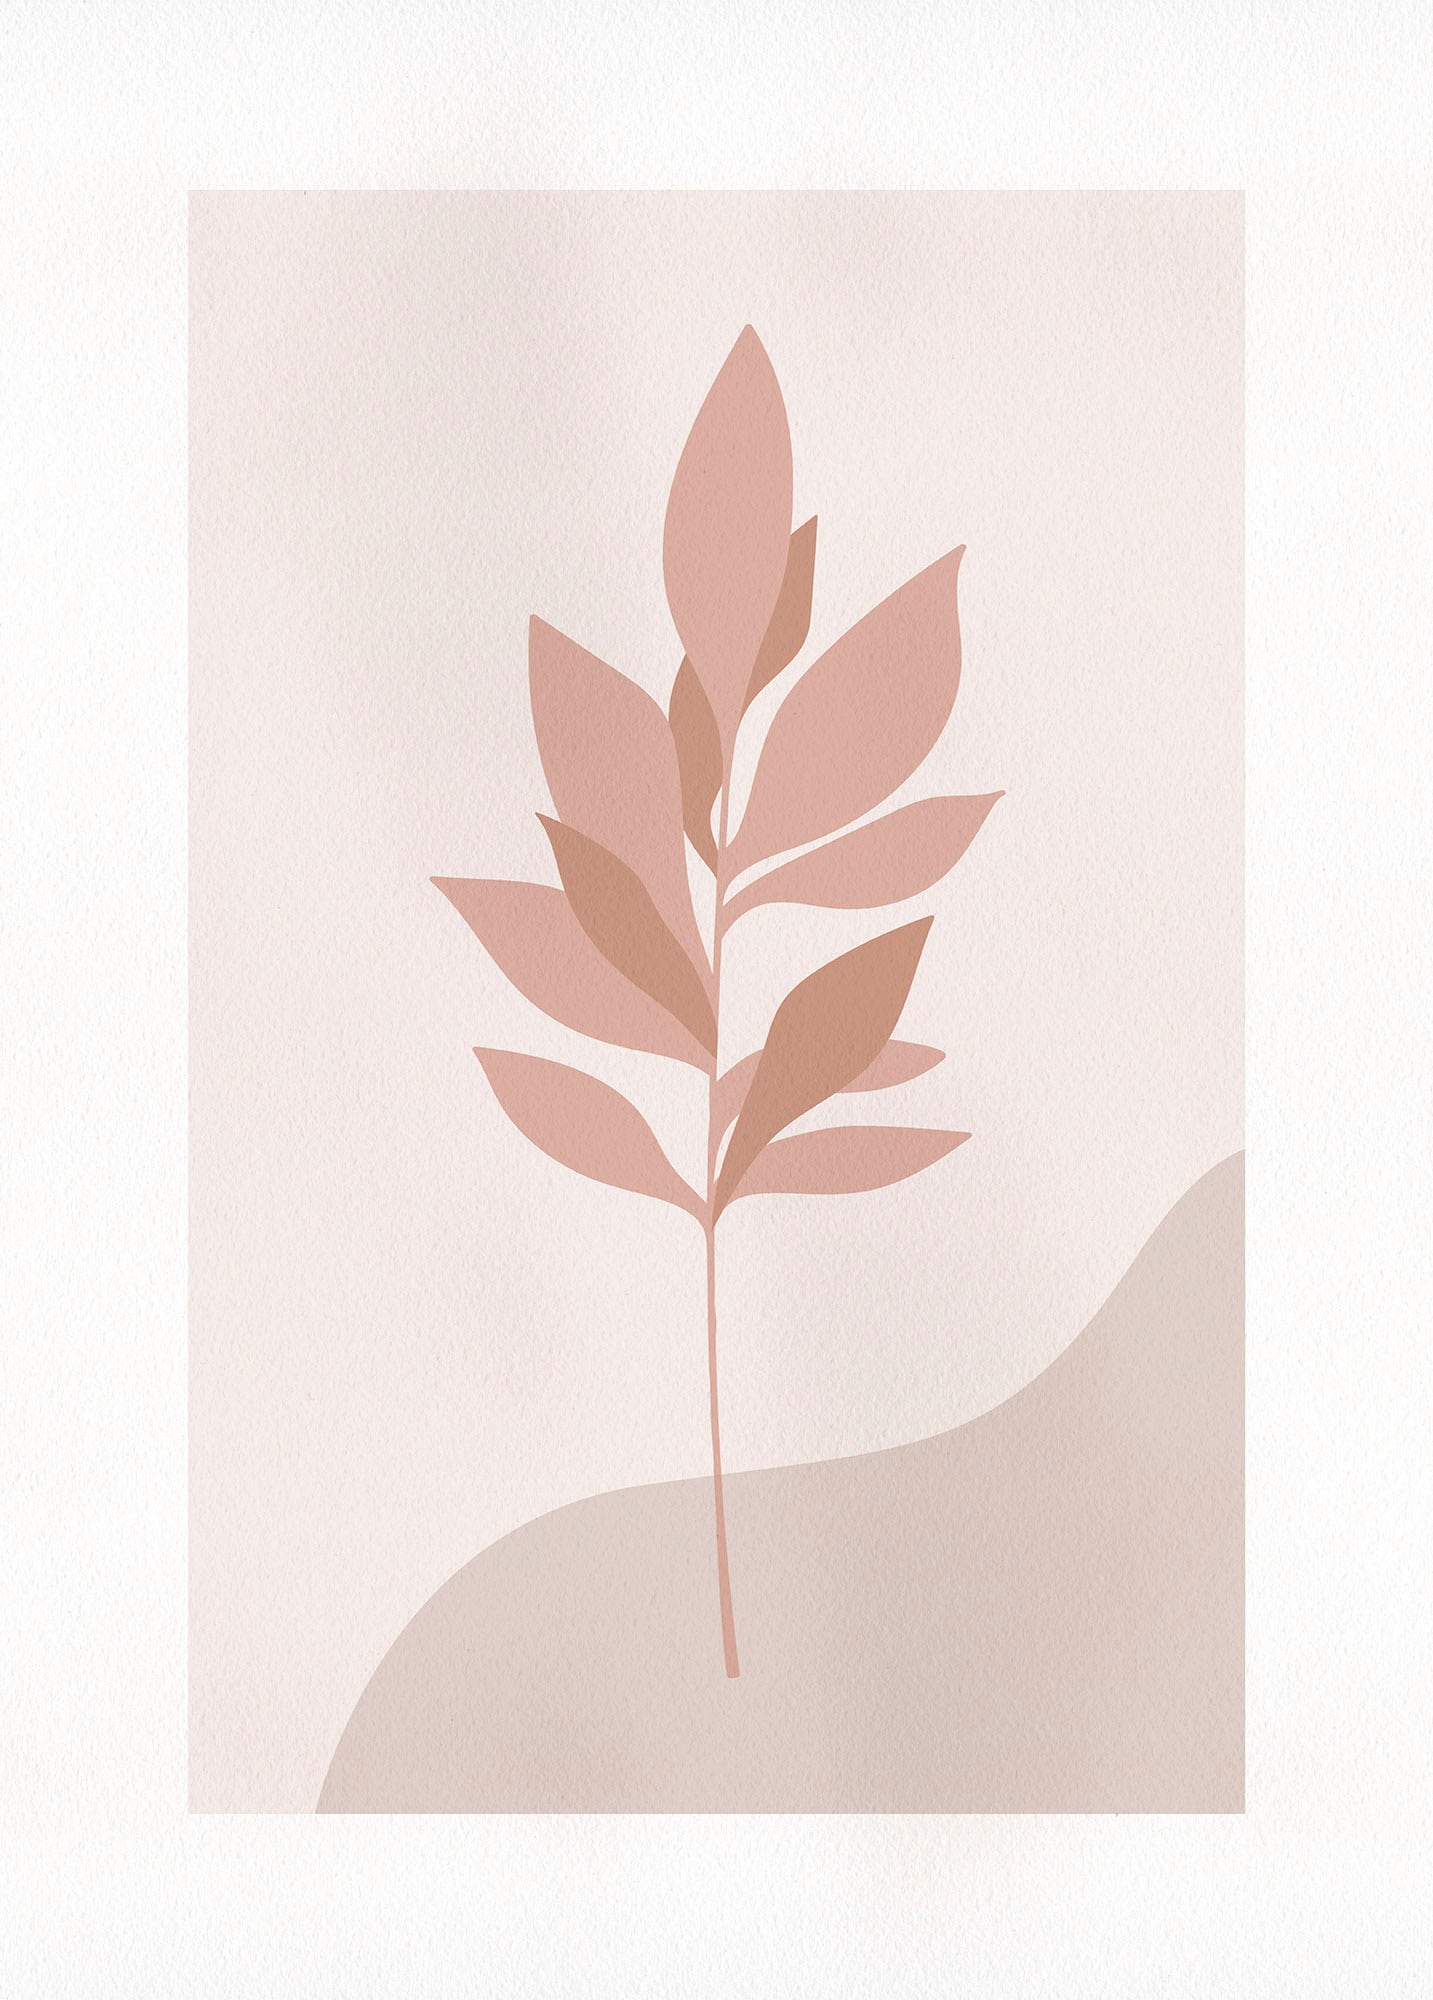 Komar Wandbild »Pink Desert«, (1 St.), Deutsches Premium-Poster Fotopapier mit seidenmatter Oberfläche und hoher Lichtbeständigkeit. Für fotorealistische Drucke mit gestochen scharfen Details und hervorragender Farbbrillanz. von Komar